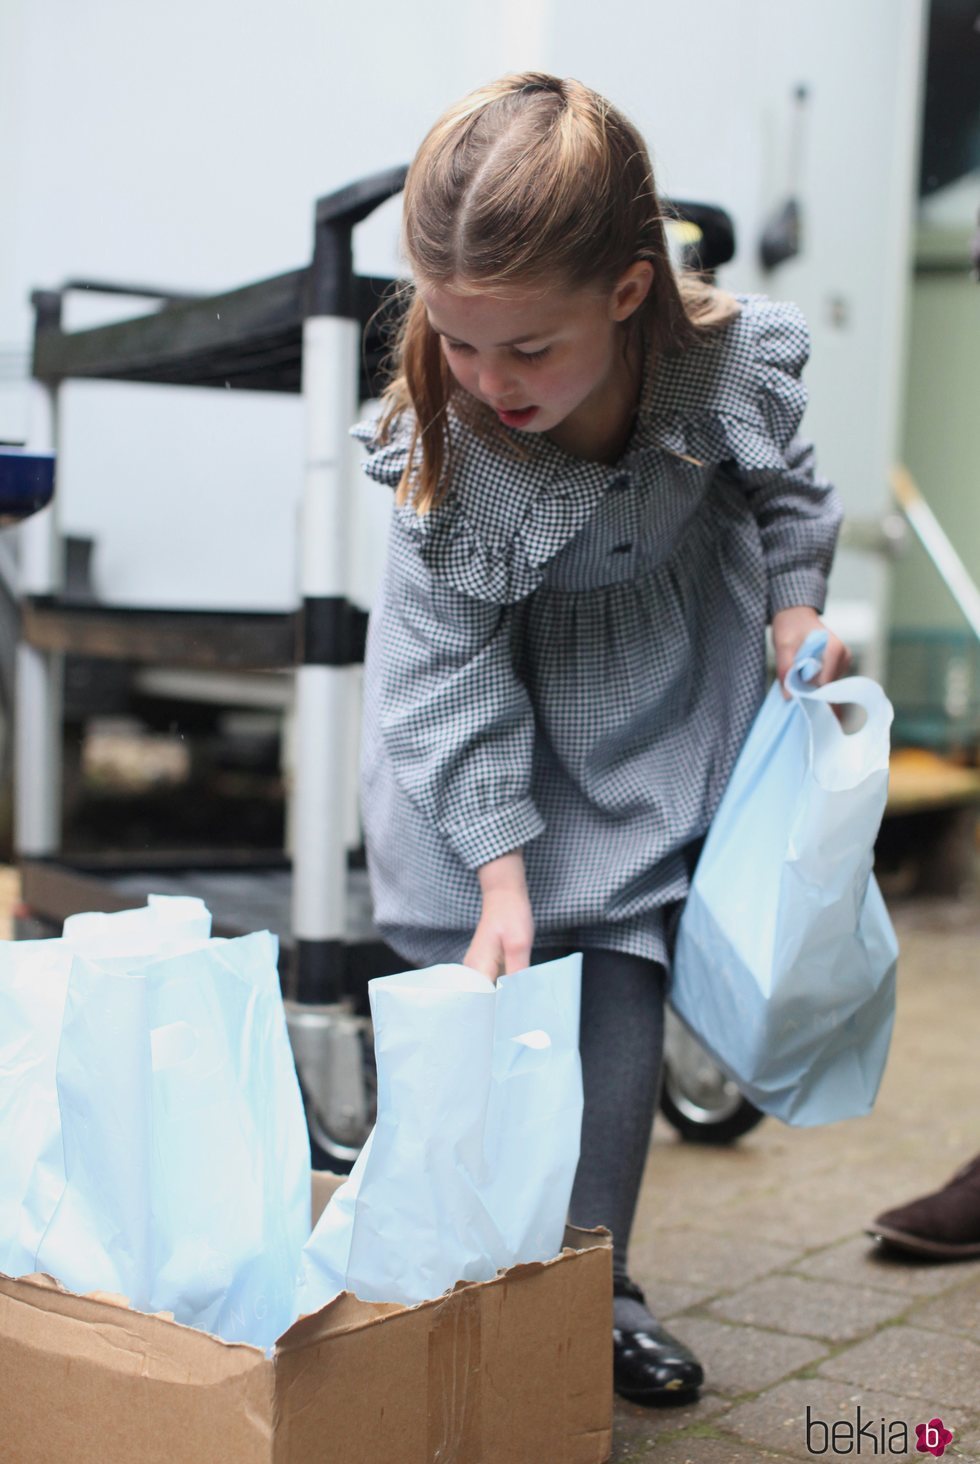 La Princesa Carlota cogiendo bolsas de comida para entregar a personas mayores